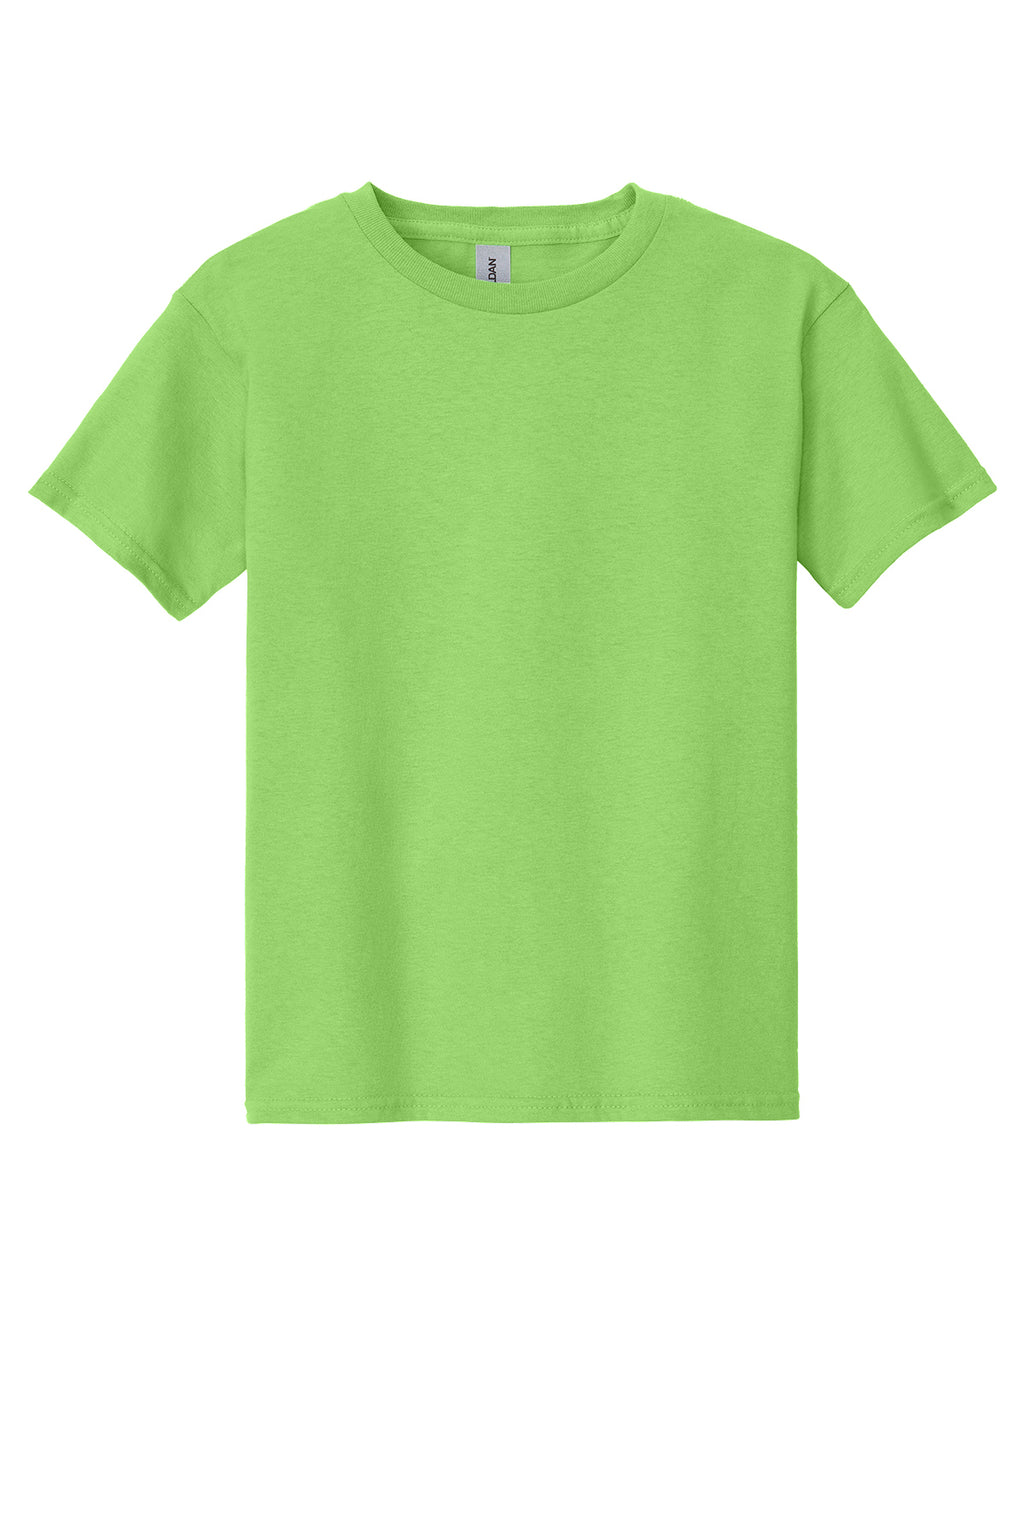 Gildan Youth S/S Shirts Lime